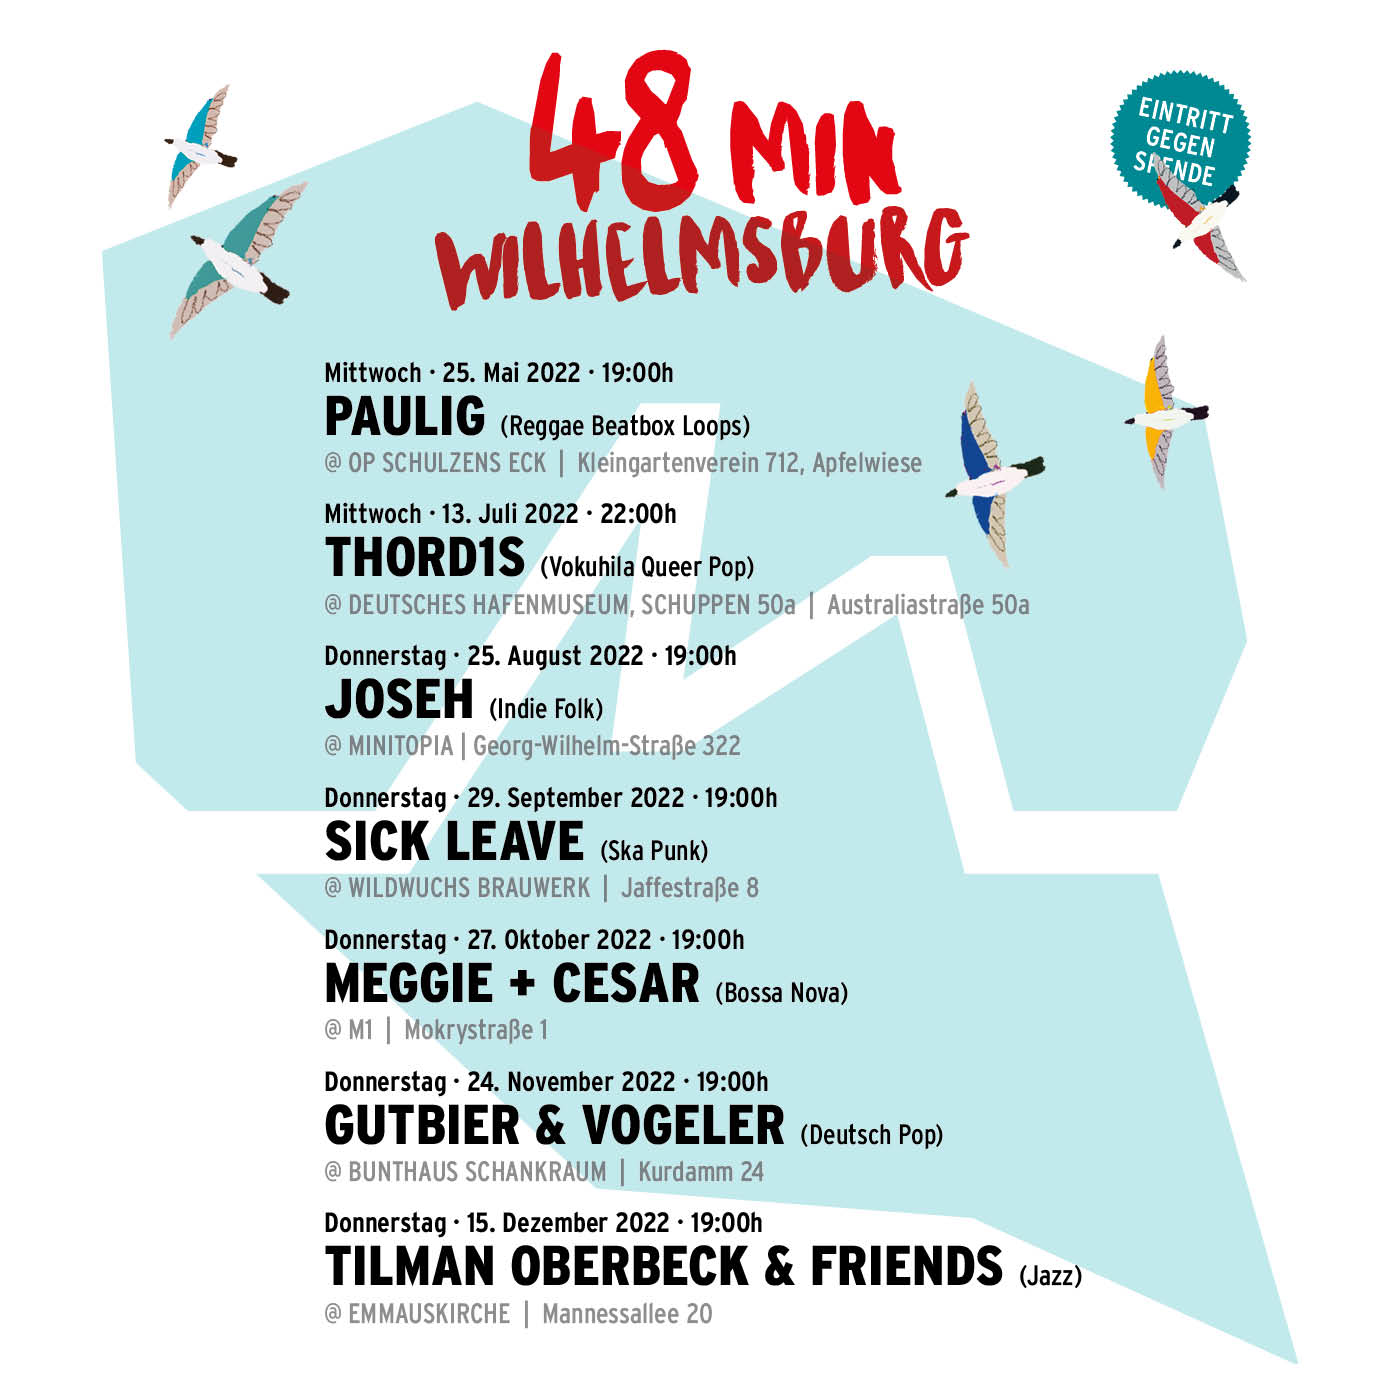 Plakat 48Min Wilhelmsburg mit allen Terminen